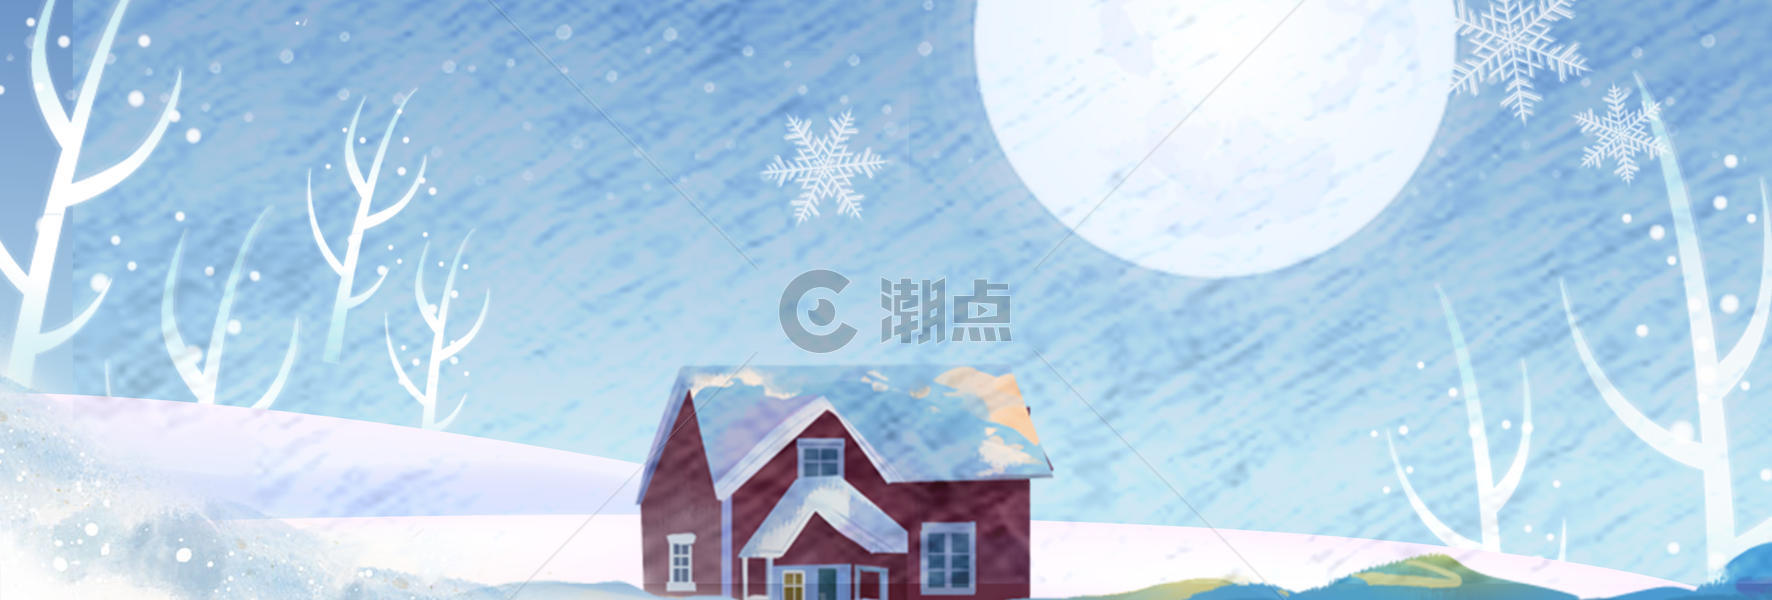 雪景banner图片素材免费下载